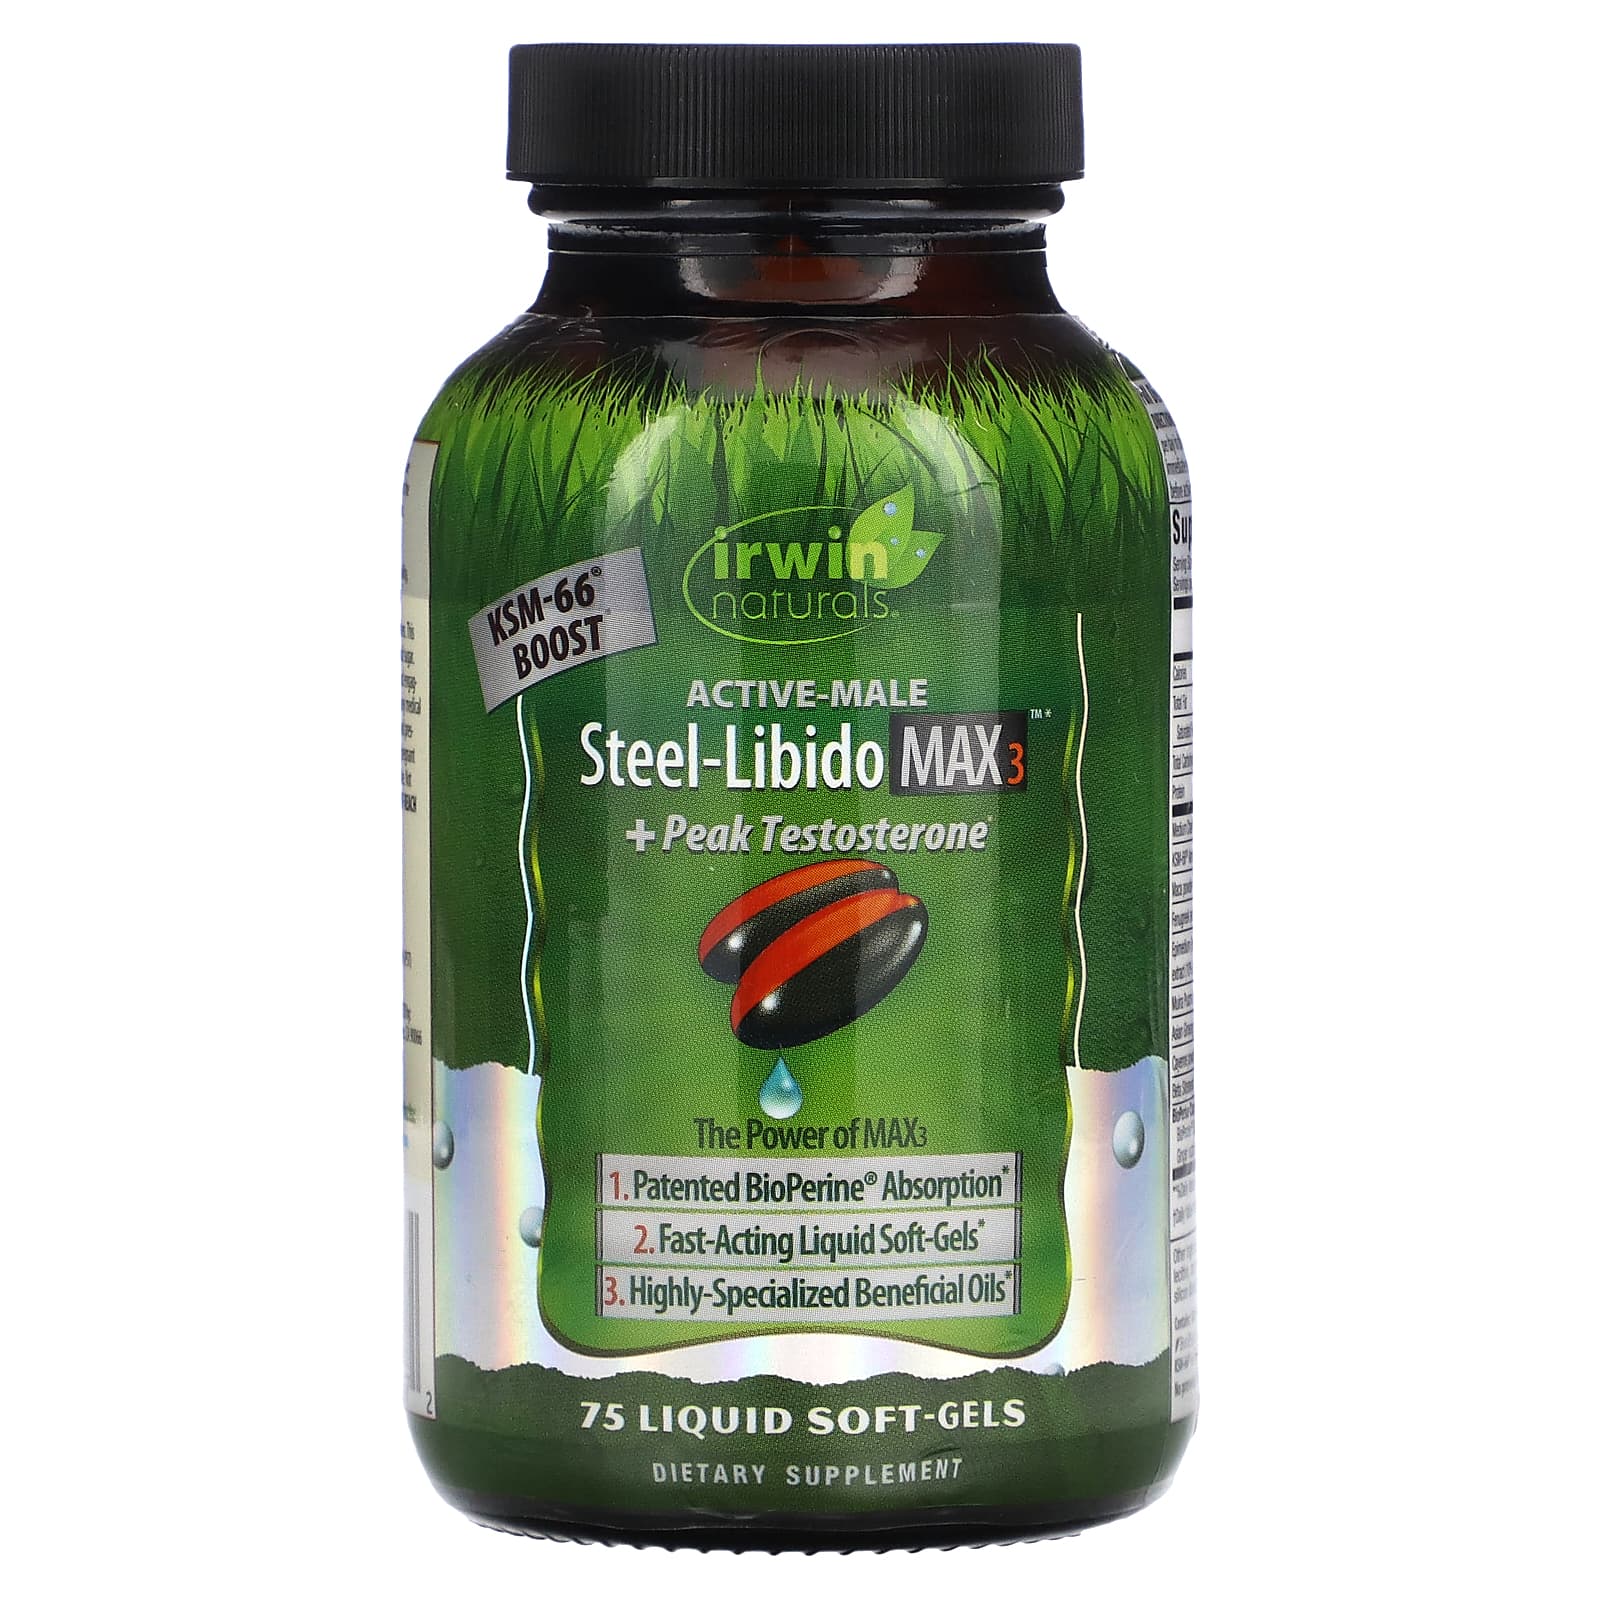 Irwin Naturals Active Meal Steel Libido Max 3 Peak Testosterone 75 4701